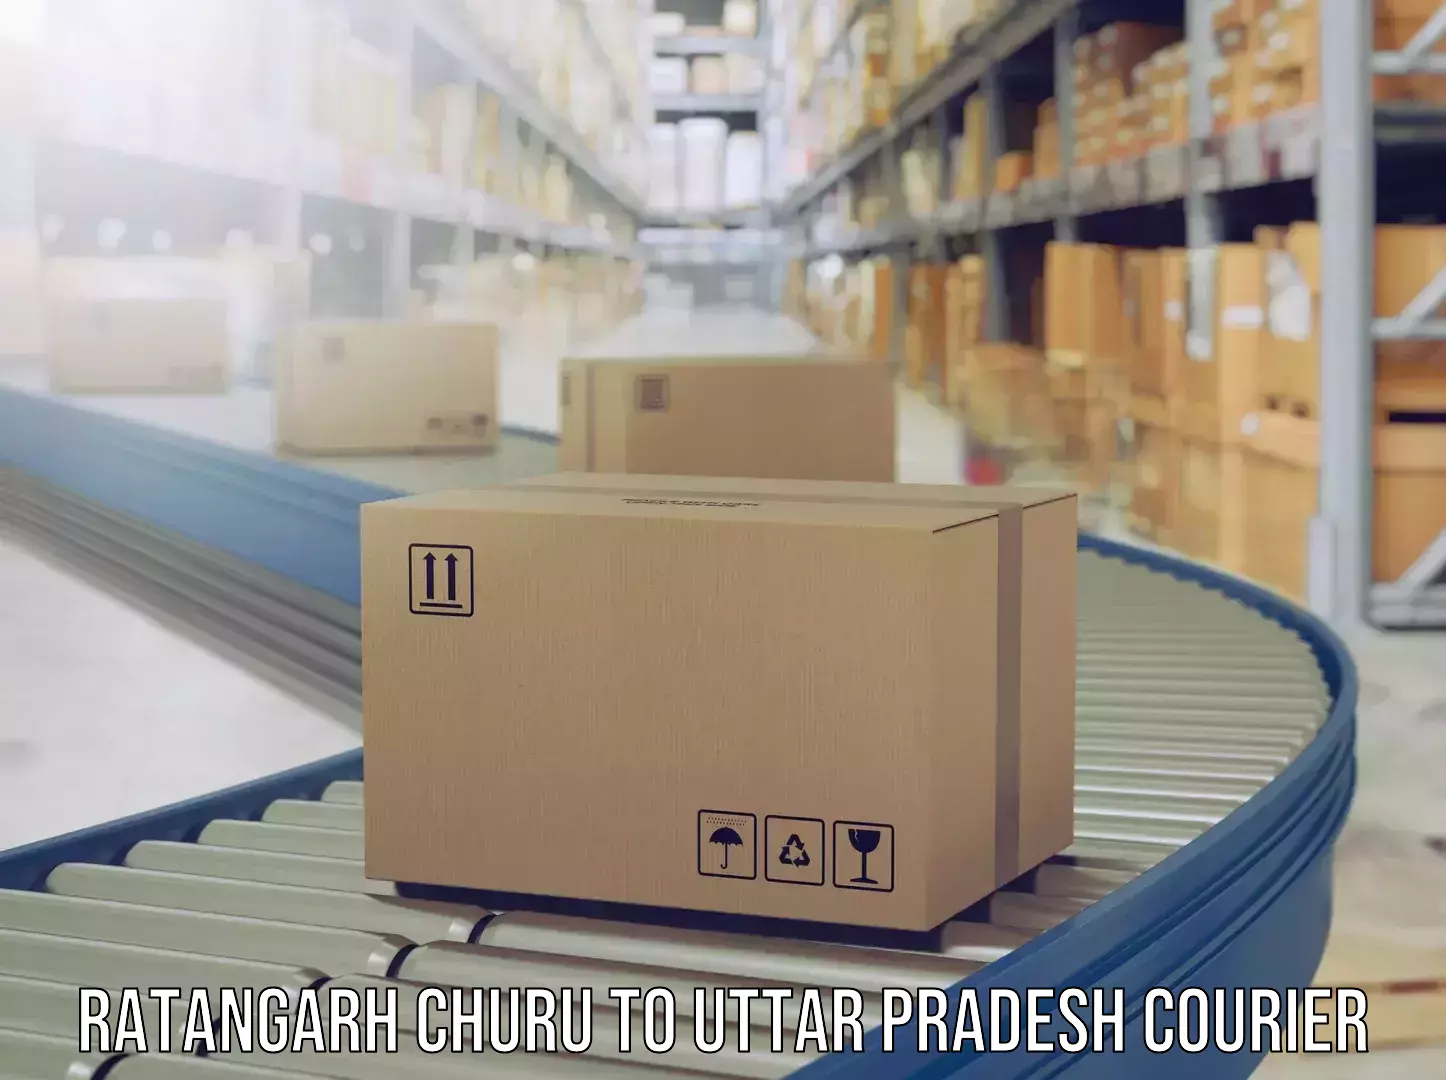 Luggage delivery app Ratangarh Churu to Prayagraj